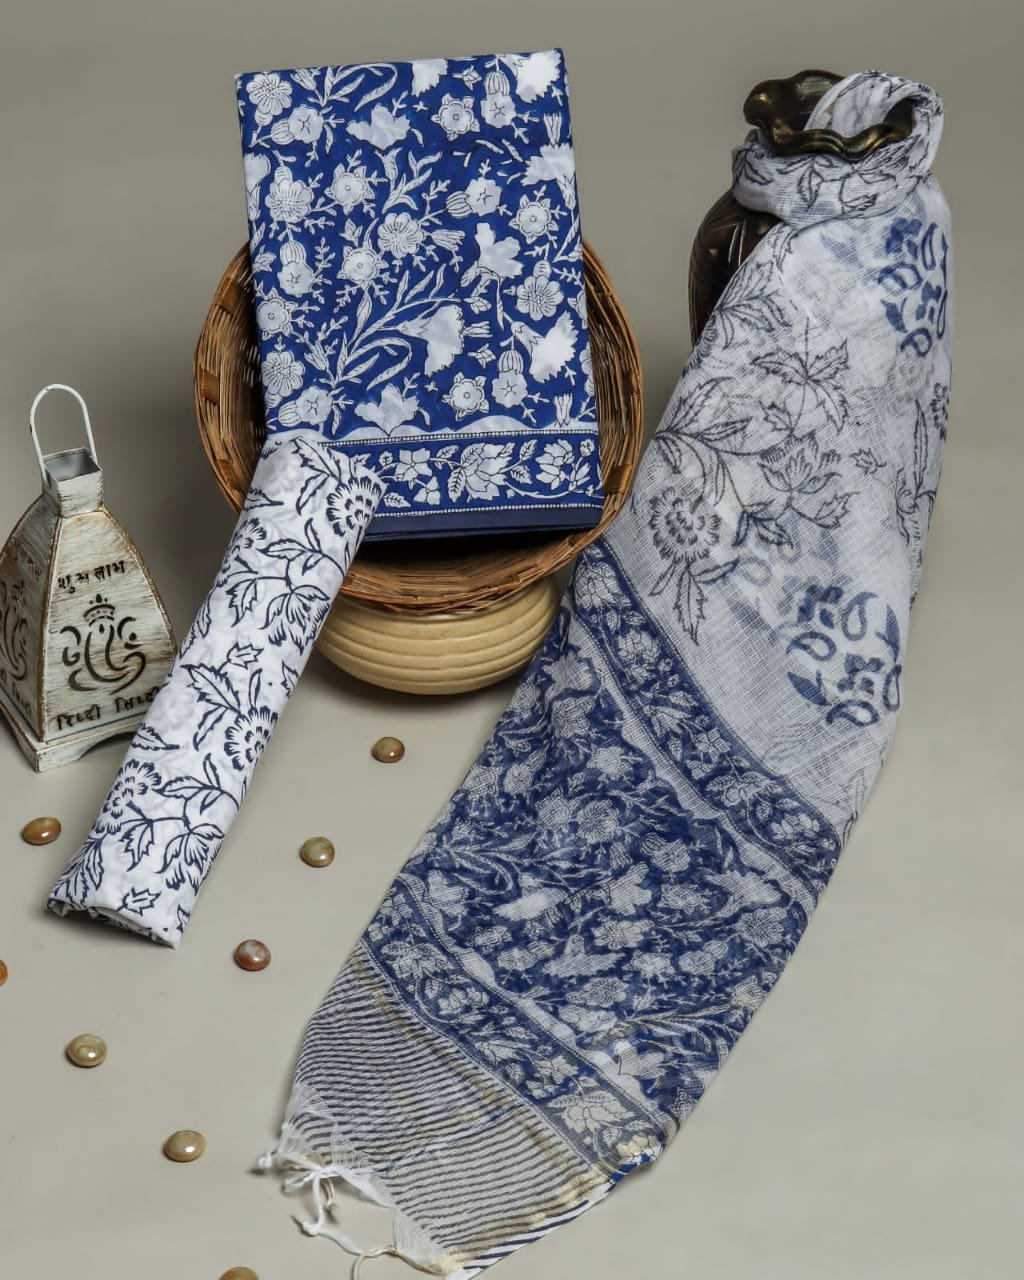 zion cotton vol-16 by suryajyoti 16001-16008 series unstitched cotton dress  material set wholesale market surat gujrat